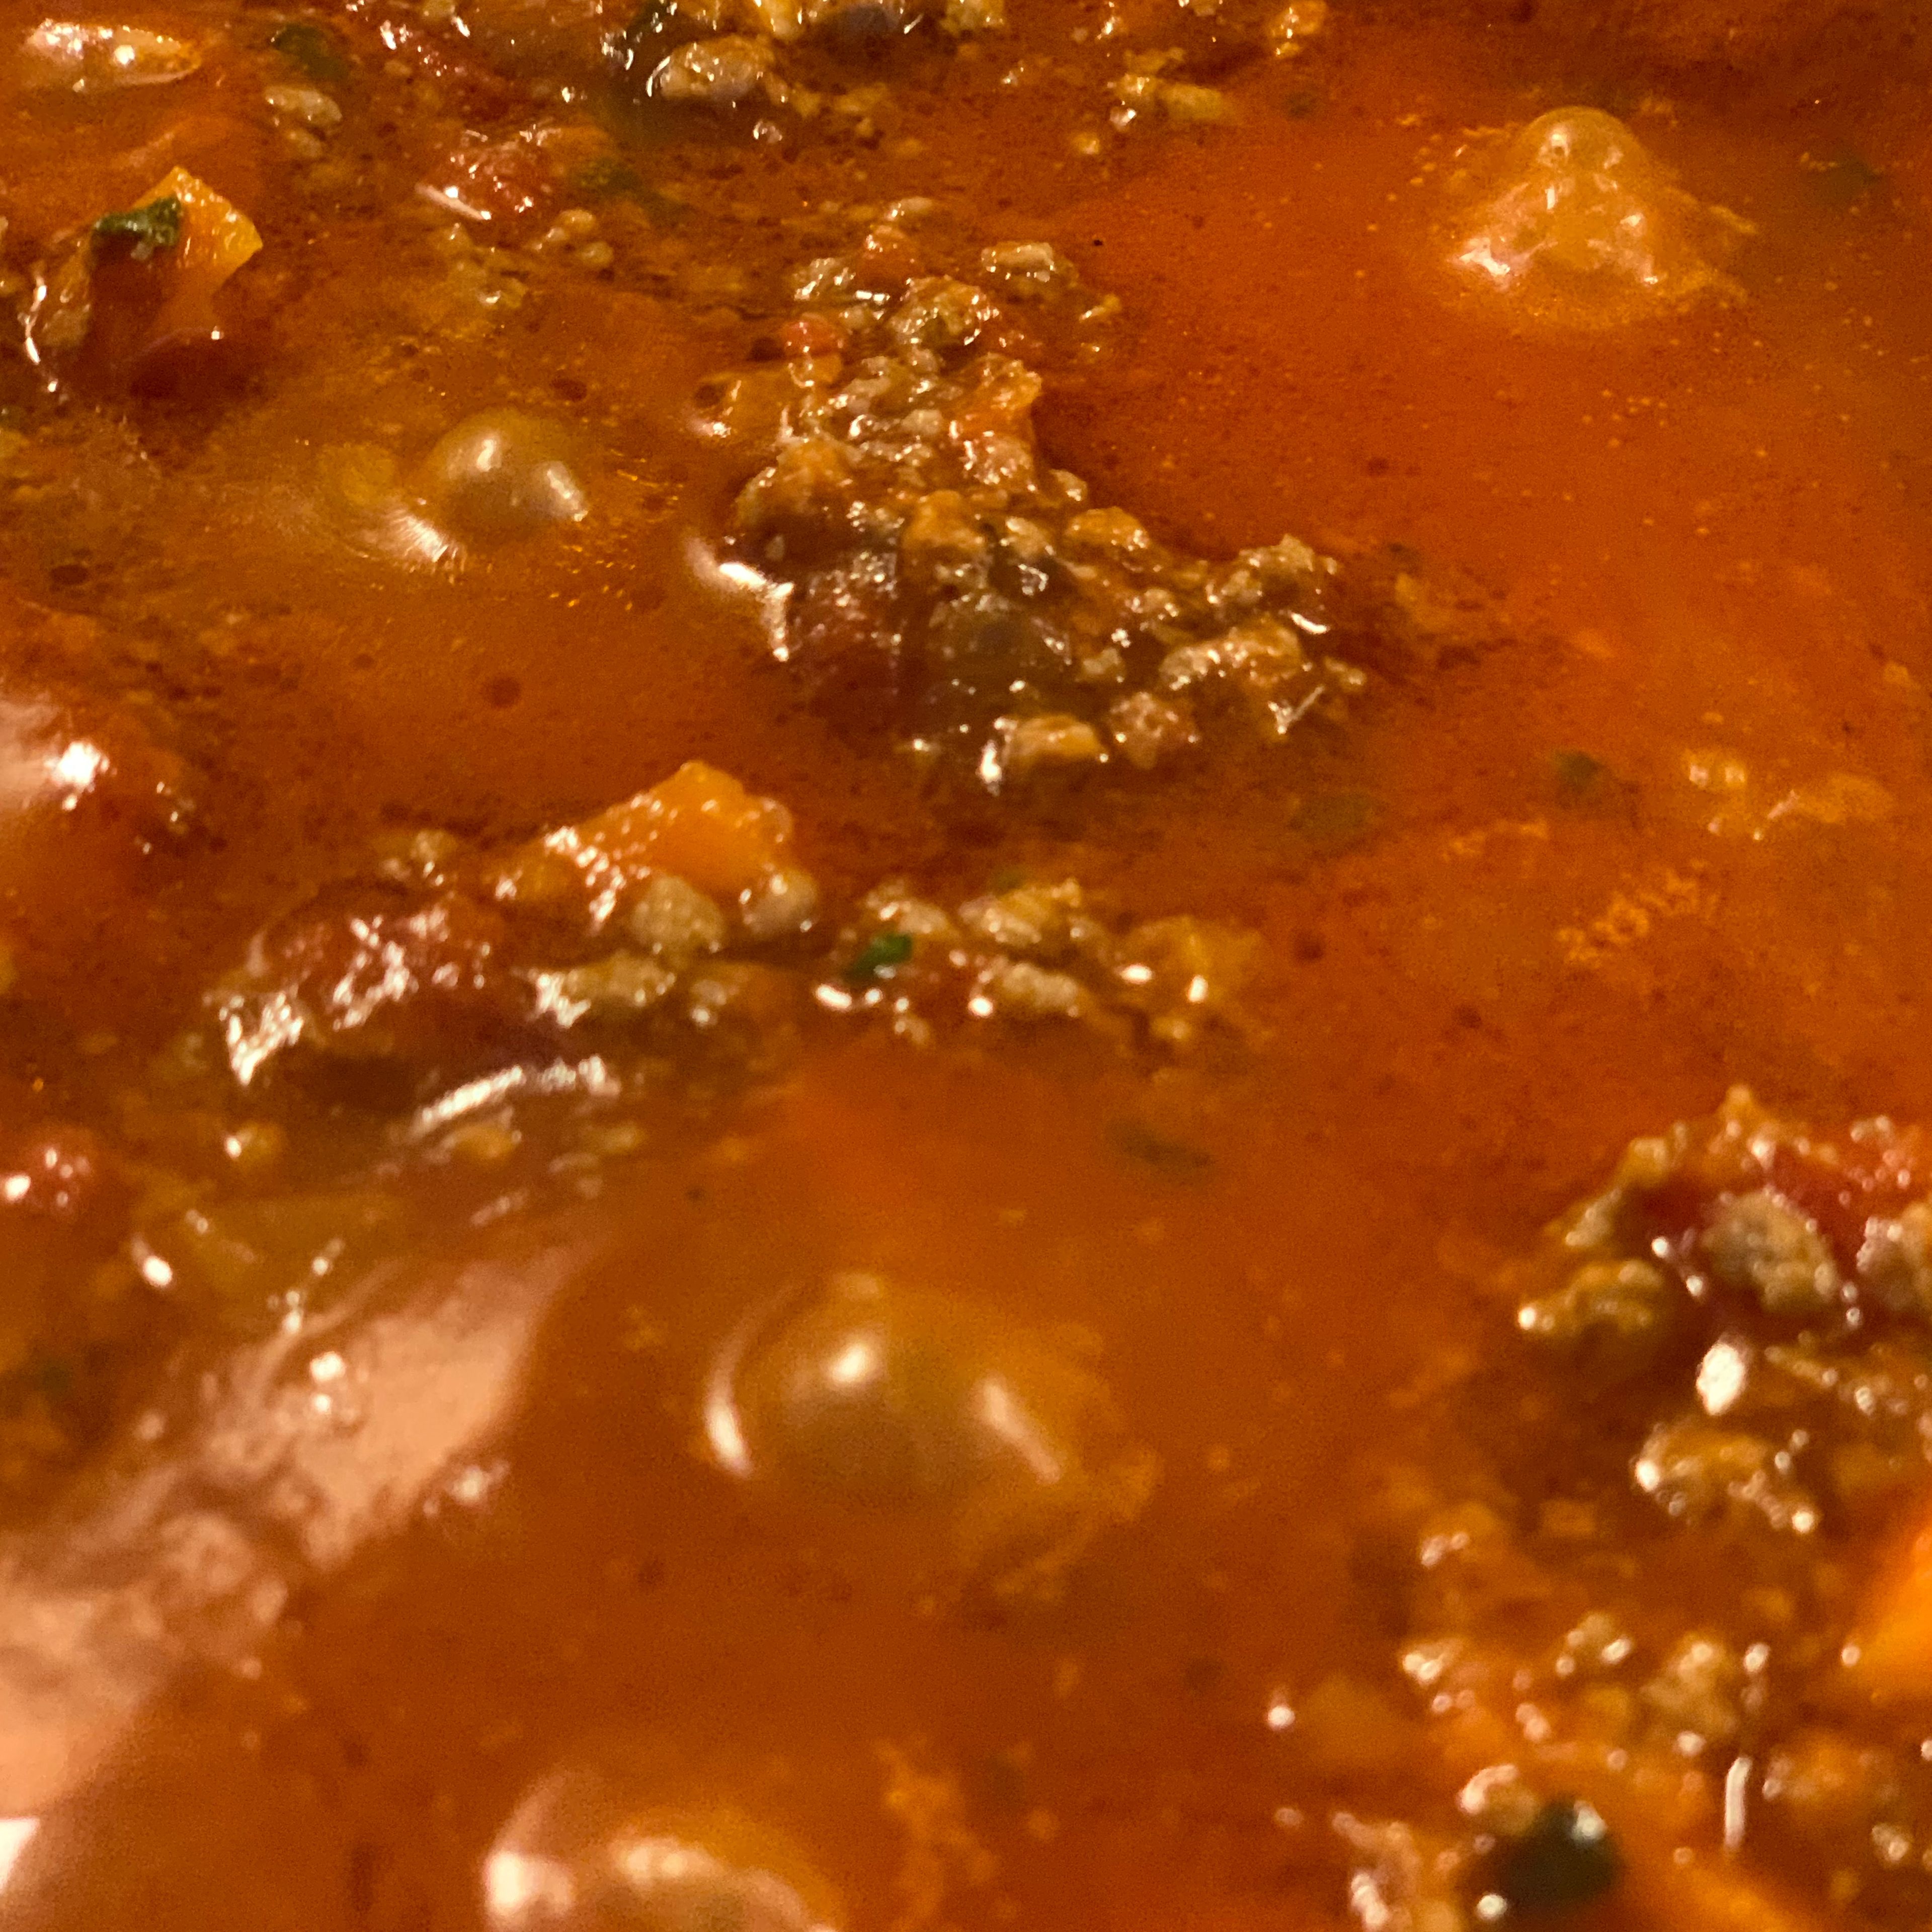 Die Masse mit Tomatensauce „ablöschen“. Danach die Thymianzweige und Lohrberblätter in die Pfanne hinzufügen und mit Oregano würzen. Nun die Sauce auf tiefer Stufe zugedeckt köcheln lassen so das sie warm bleibt bis zum servieren.